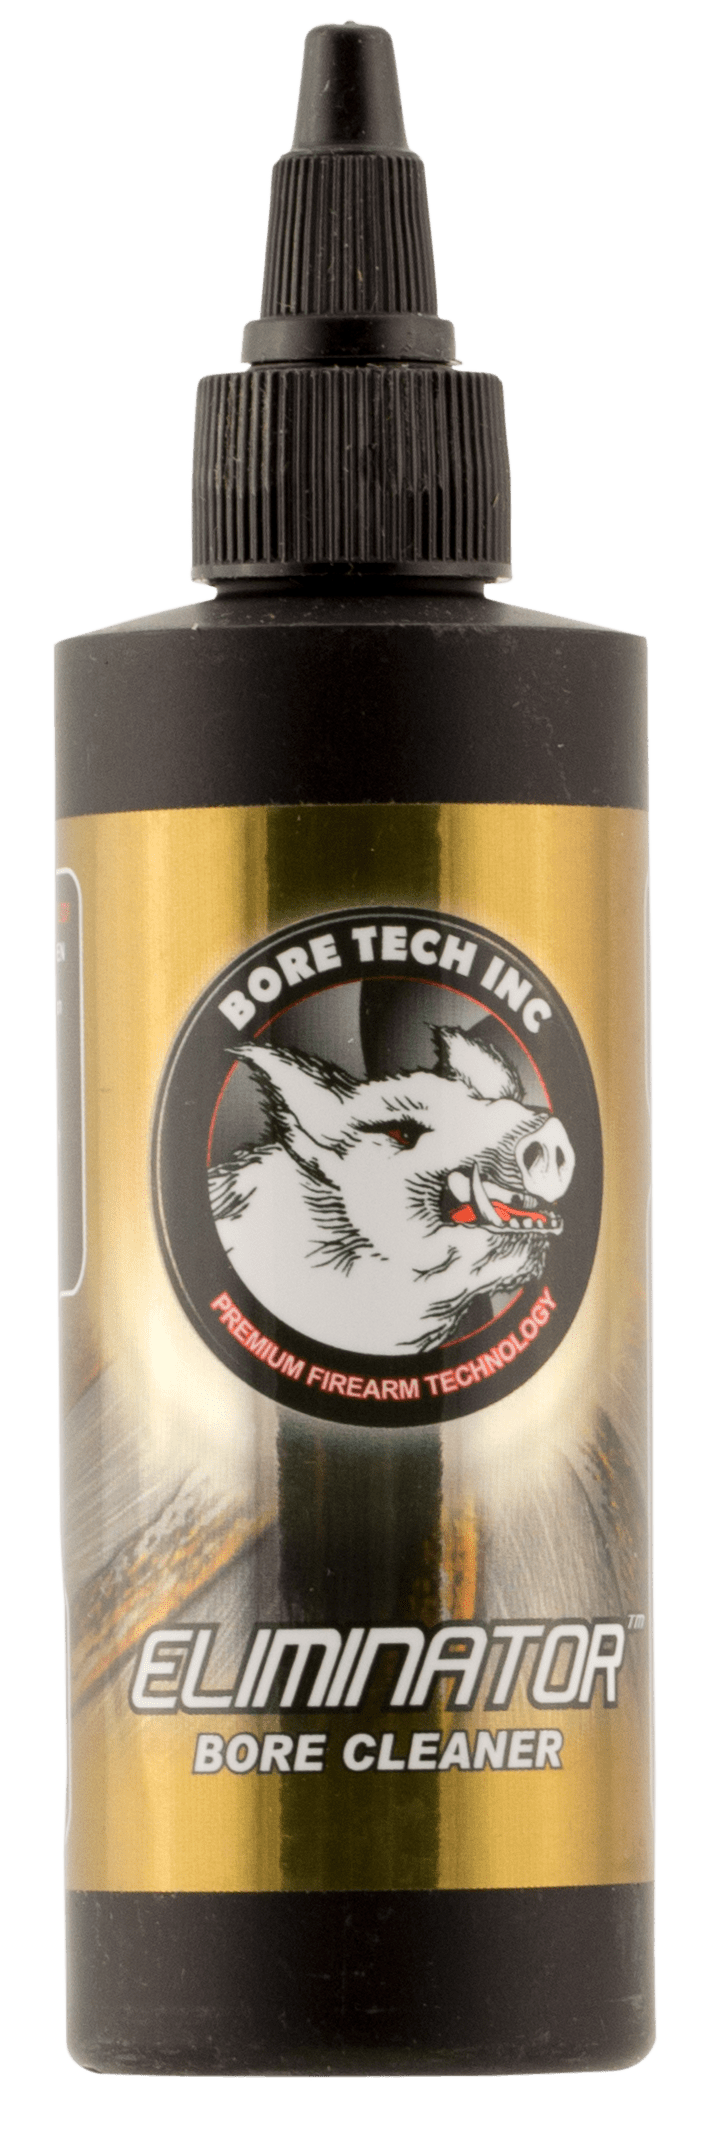 Bore Tech Bore Tech Eliminator, Btech Btce-25004    Eliminator Bore  4oz Gun Care